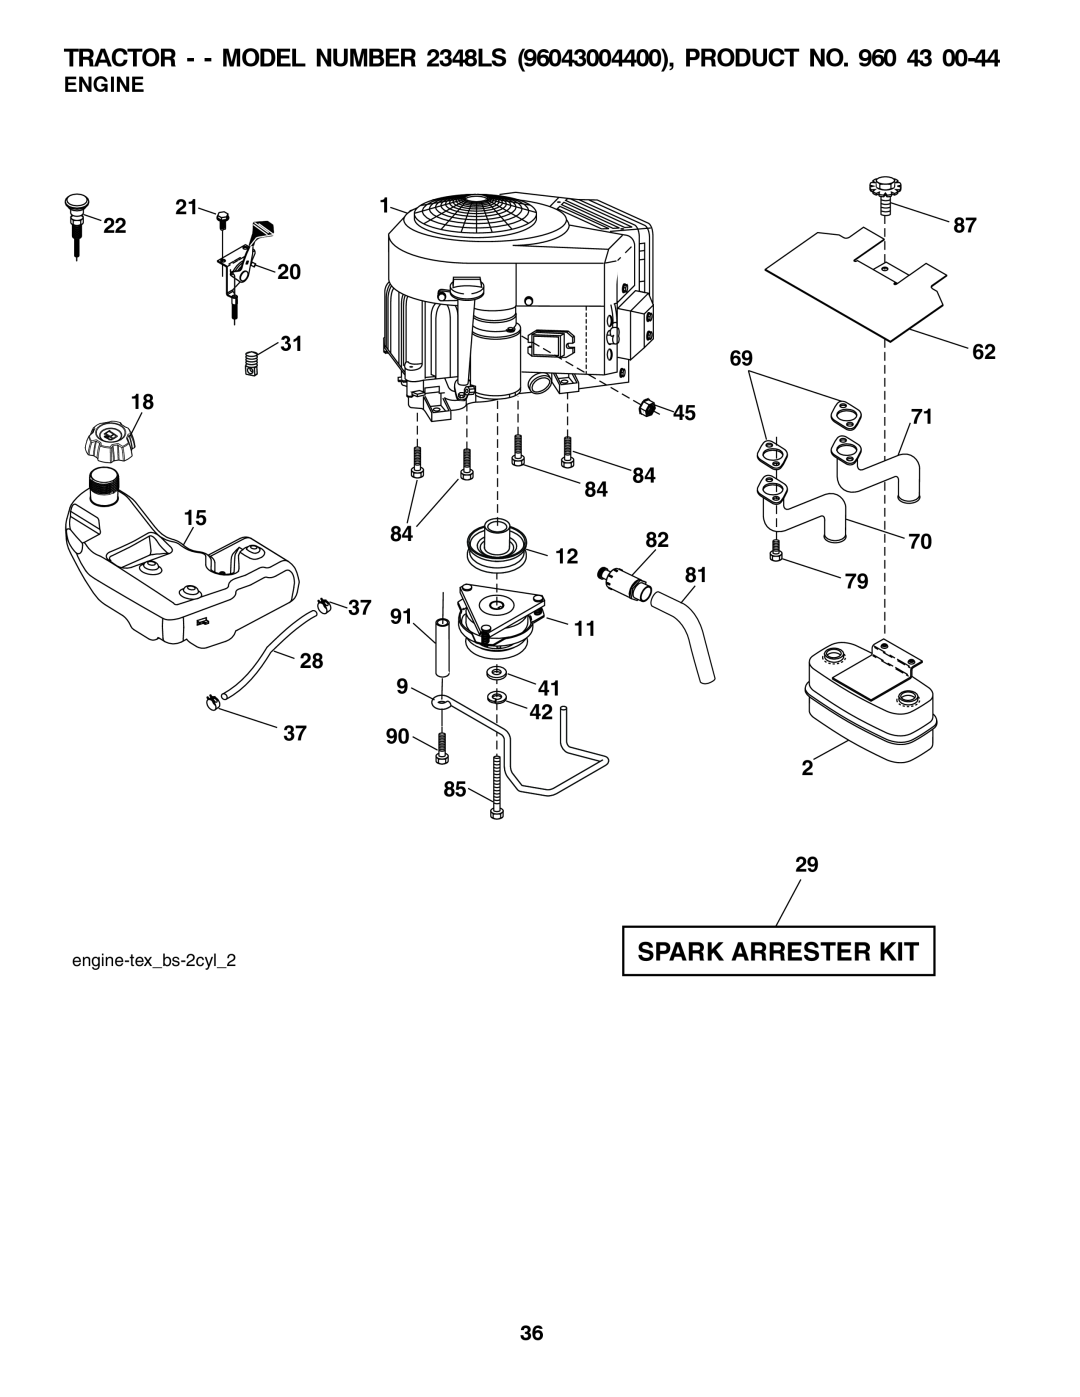 Univex 96043004400, 2348LS owner manual Spark Arrester Kit, Engine 